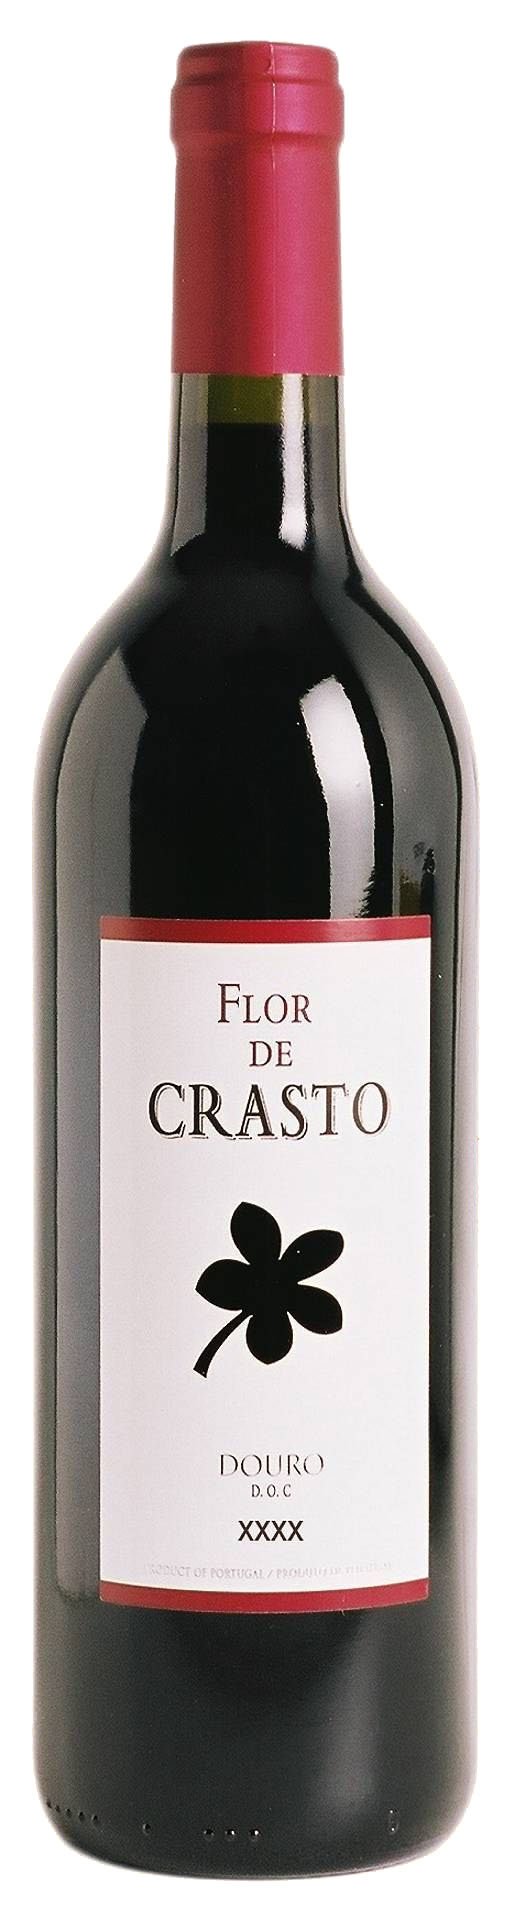 Flor de Crasto ( Quinta do Crasto ) 2004